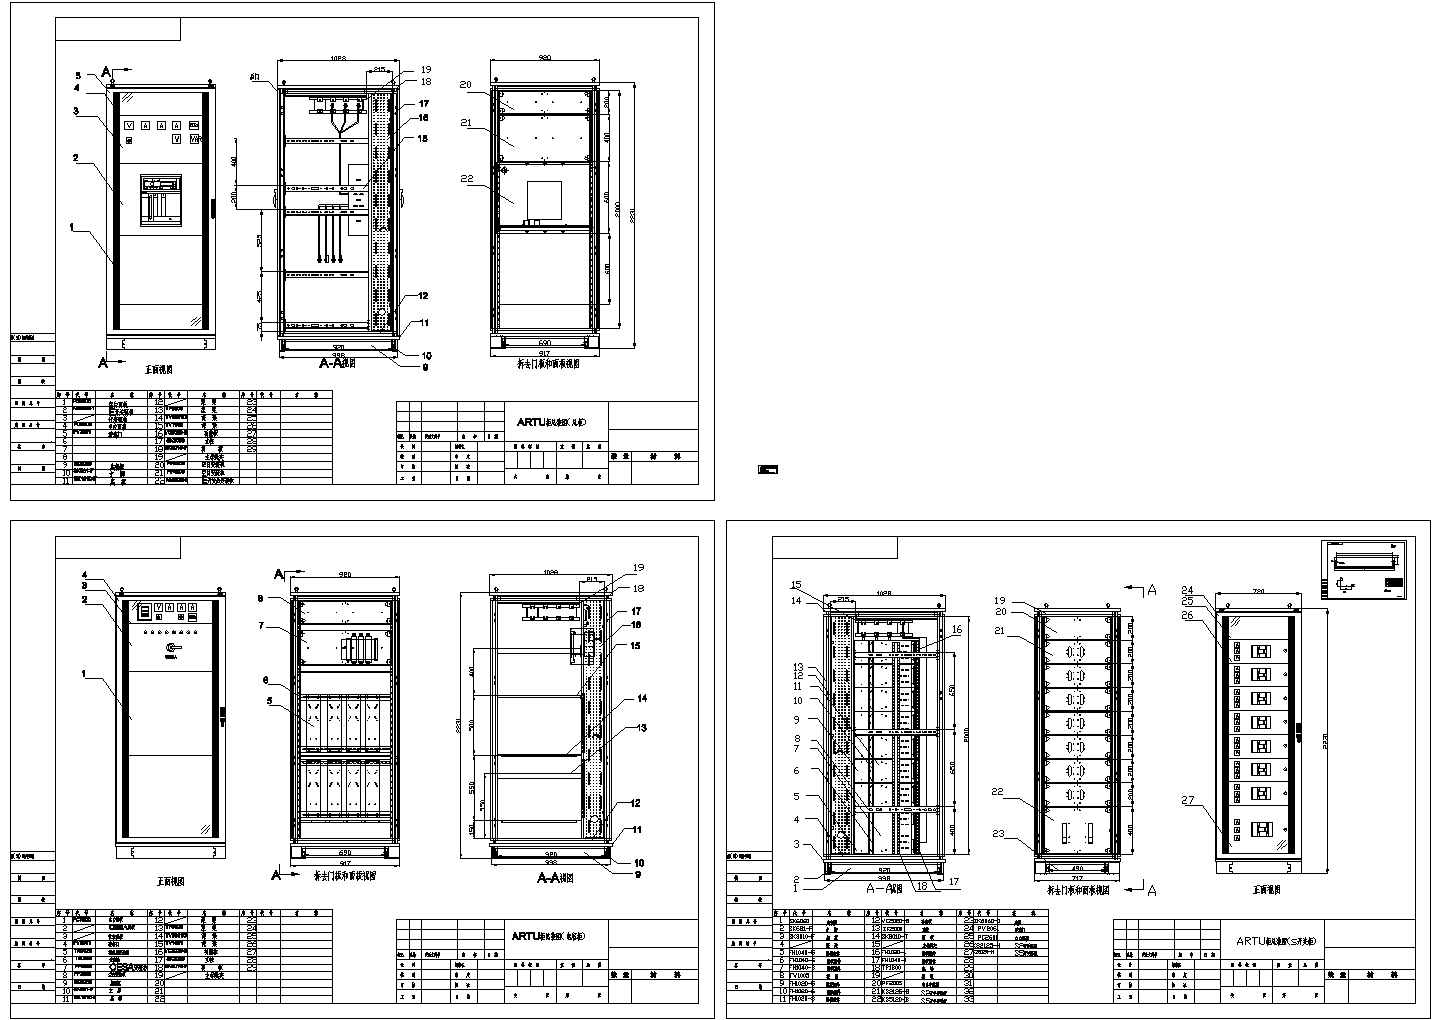 某标准型ARTU柜设备电气系统总装设计CAD图纸